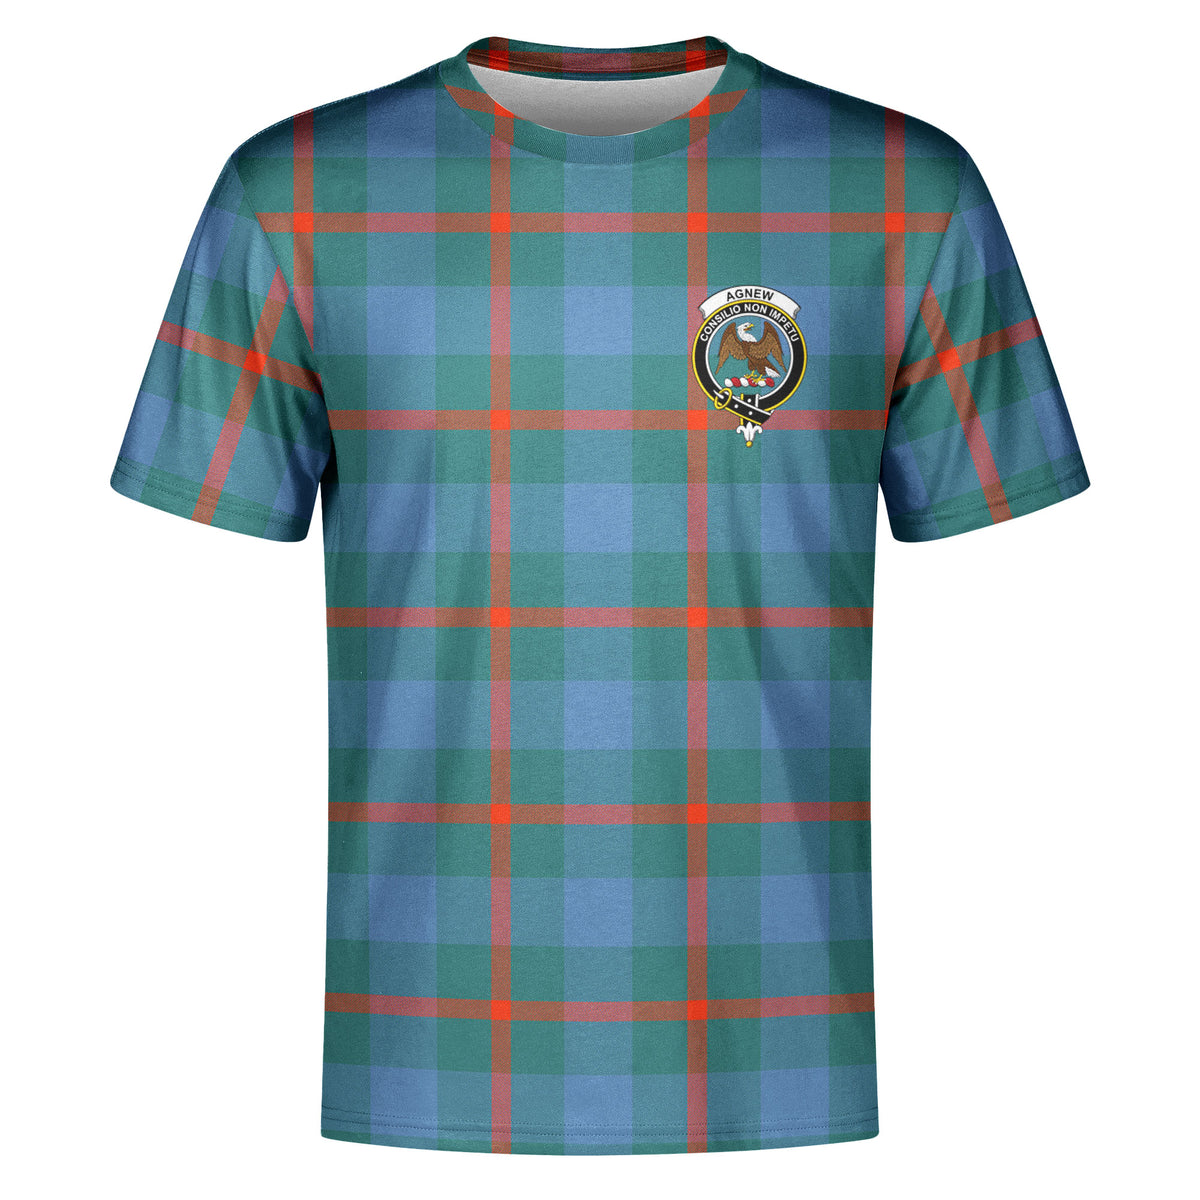 Agnew Ancient Tartan Crest T-shirt